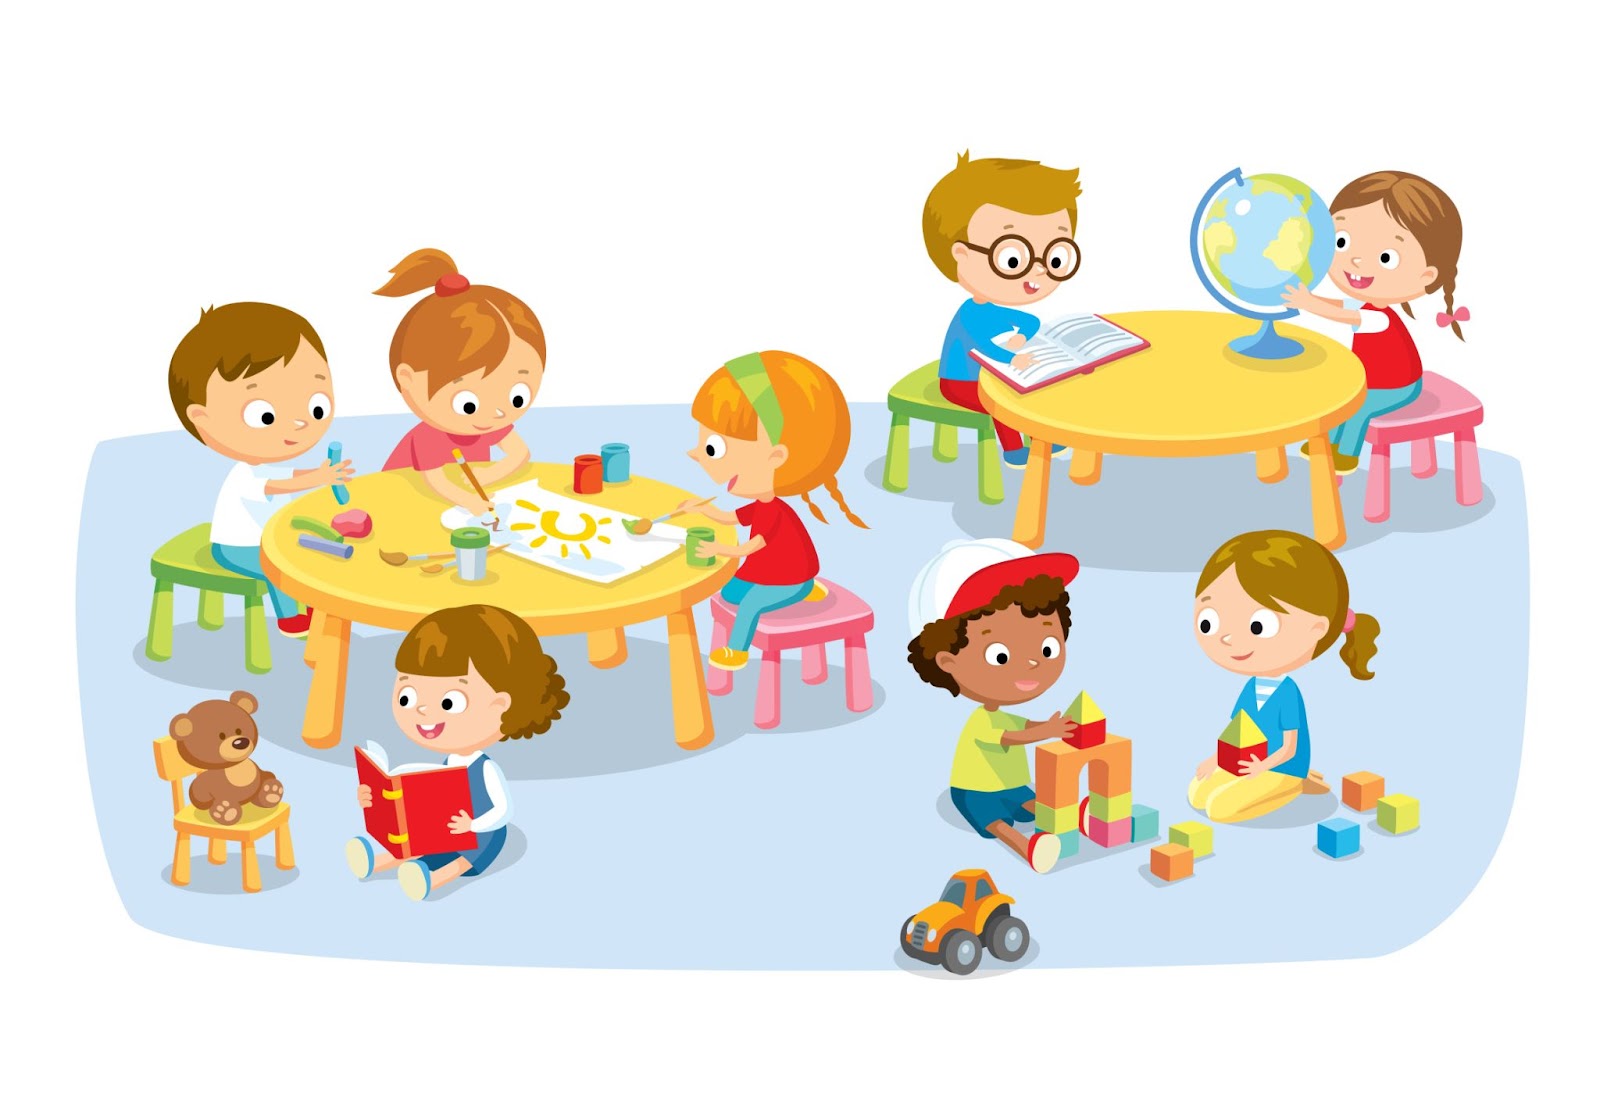 Группа детей дошкольного возраста играет в игровой комнате, иллюстрация